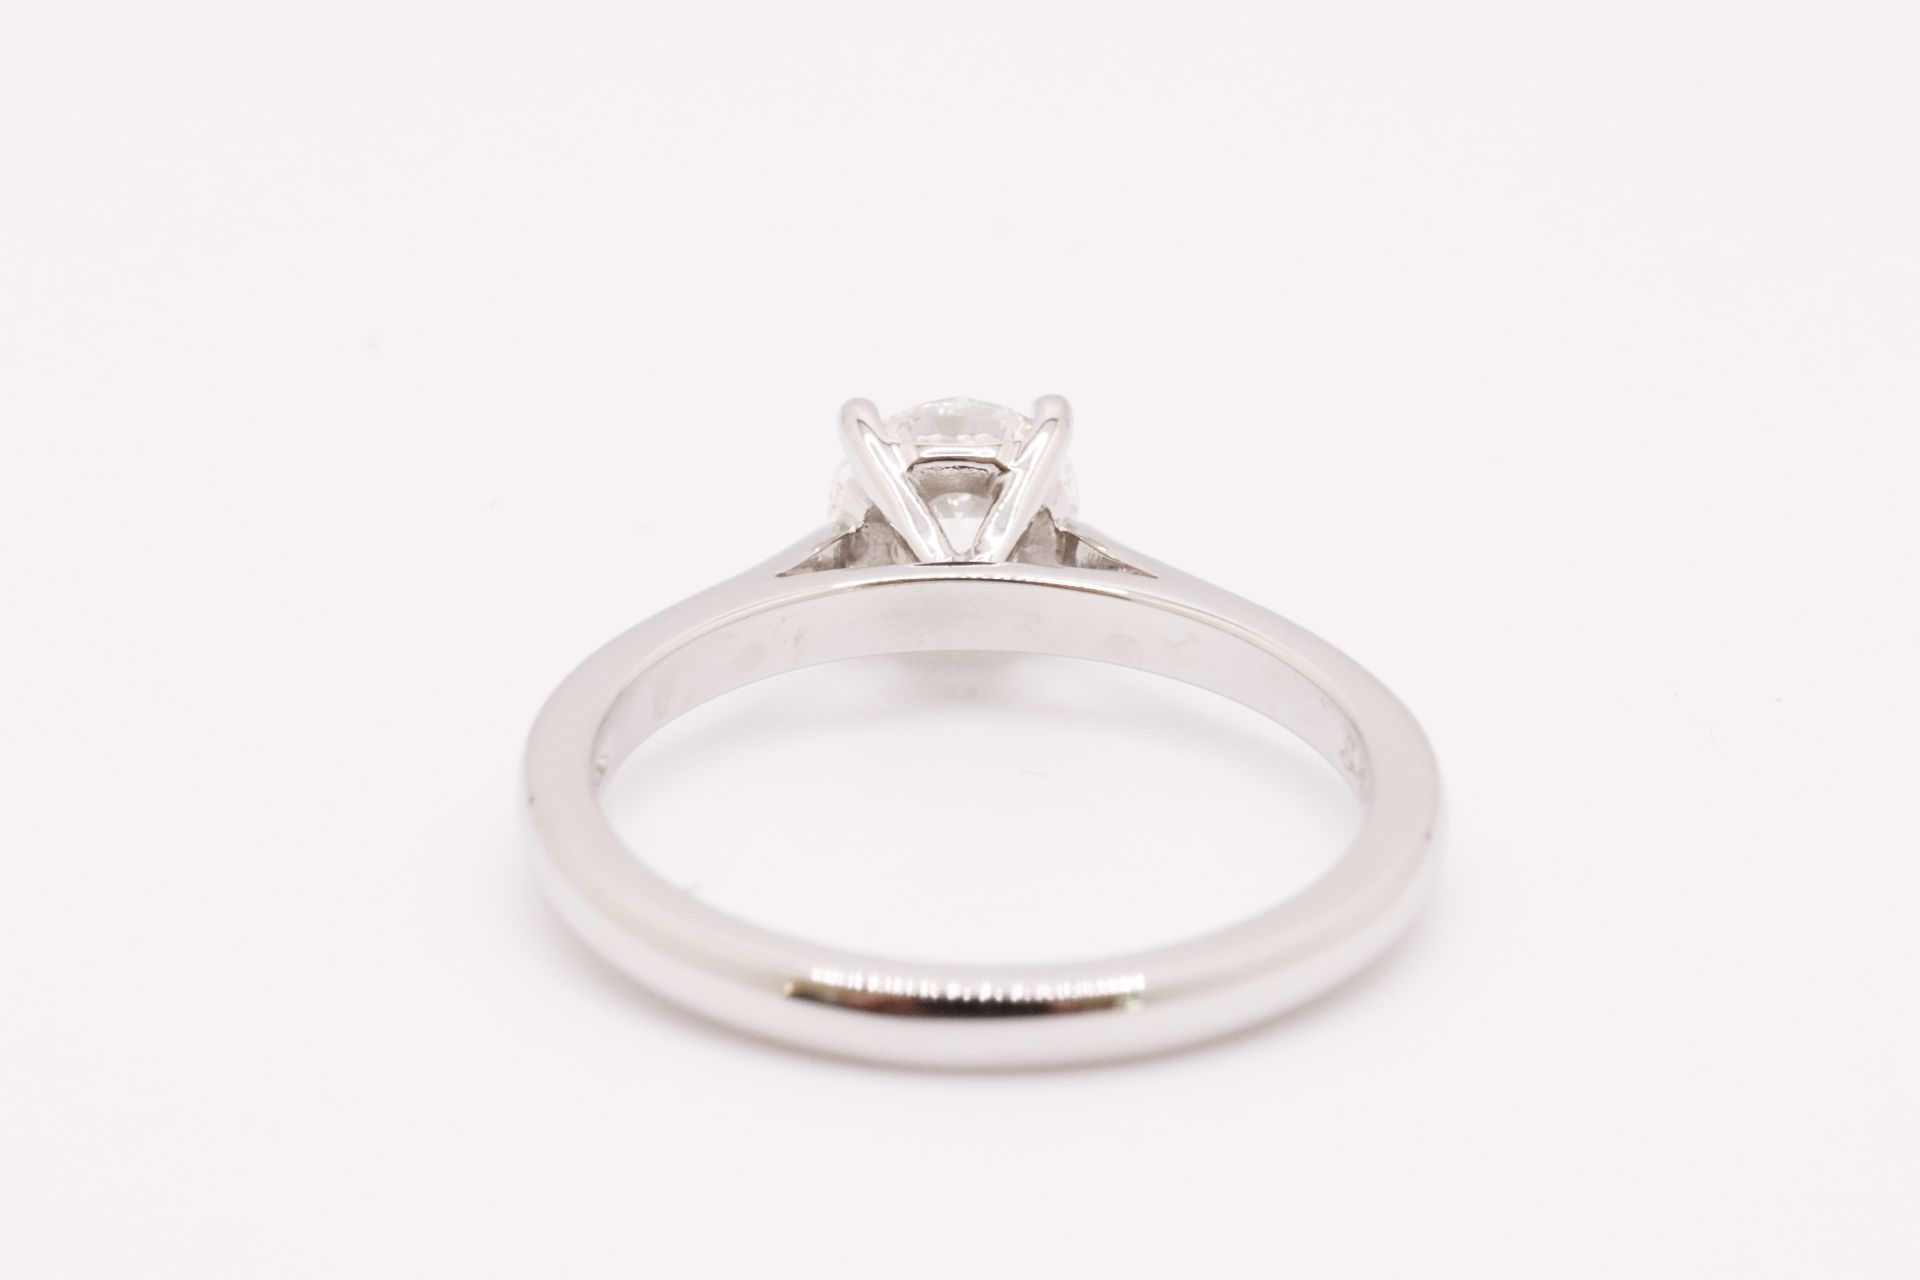 Round Brilliant Cut Natural Diamond Platinum Ring 1.20 Carat D Colour VS2 Clarity ID EX EX - GIA - Image 4 of 5